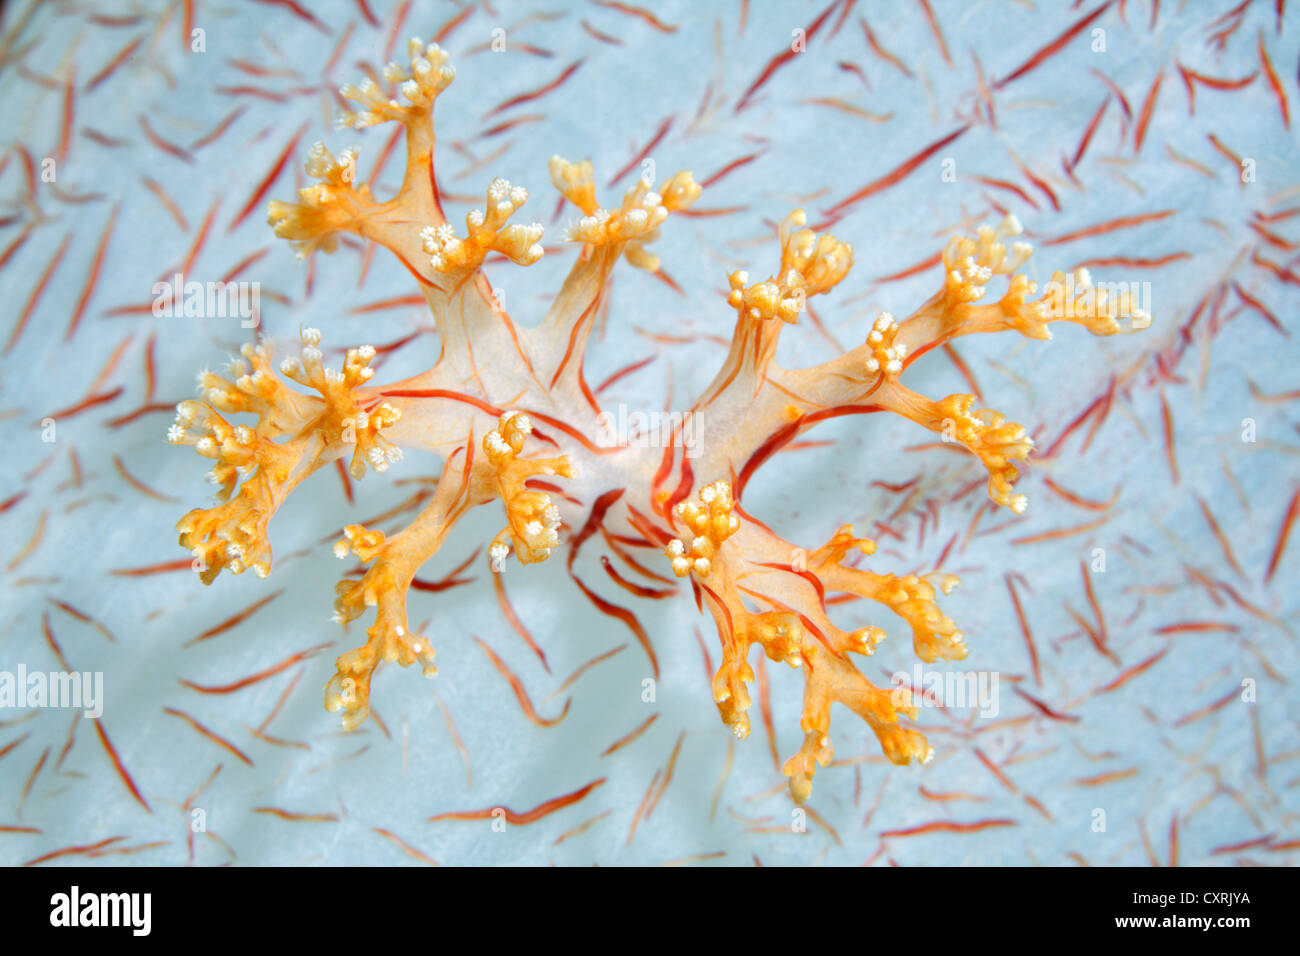 Los pólipos de coral sobre la base de una especie de coral blando (Dendronephthya klunzingeri), vista detallada, la Gran Barrera de Coral Foto de stock